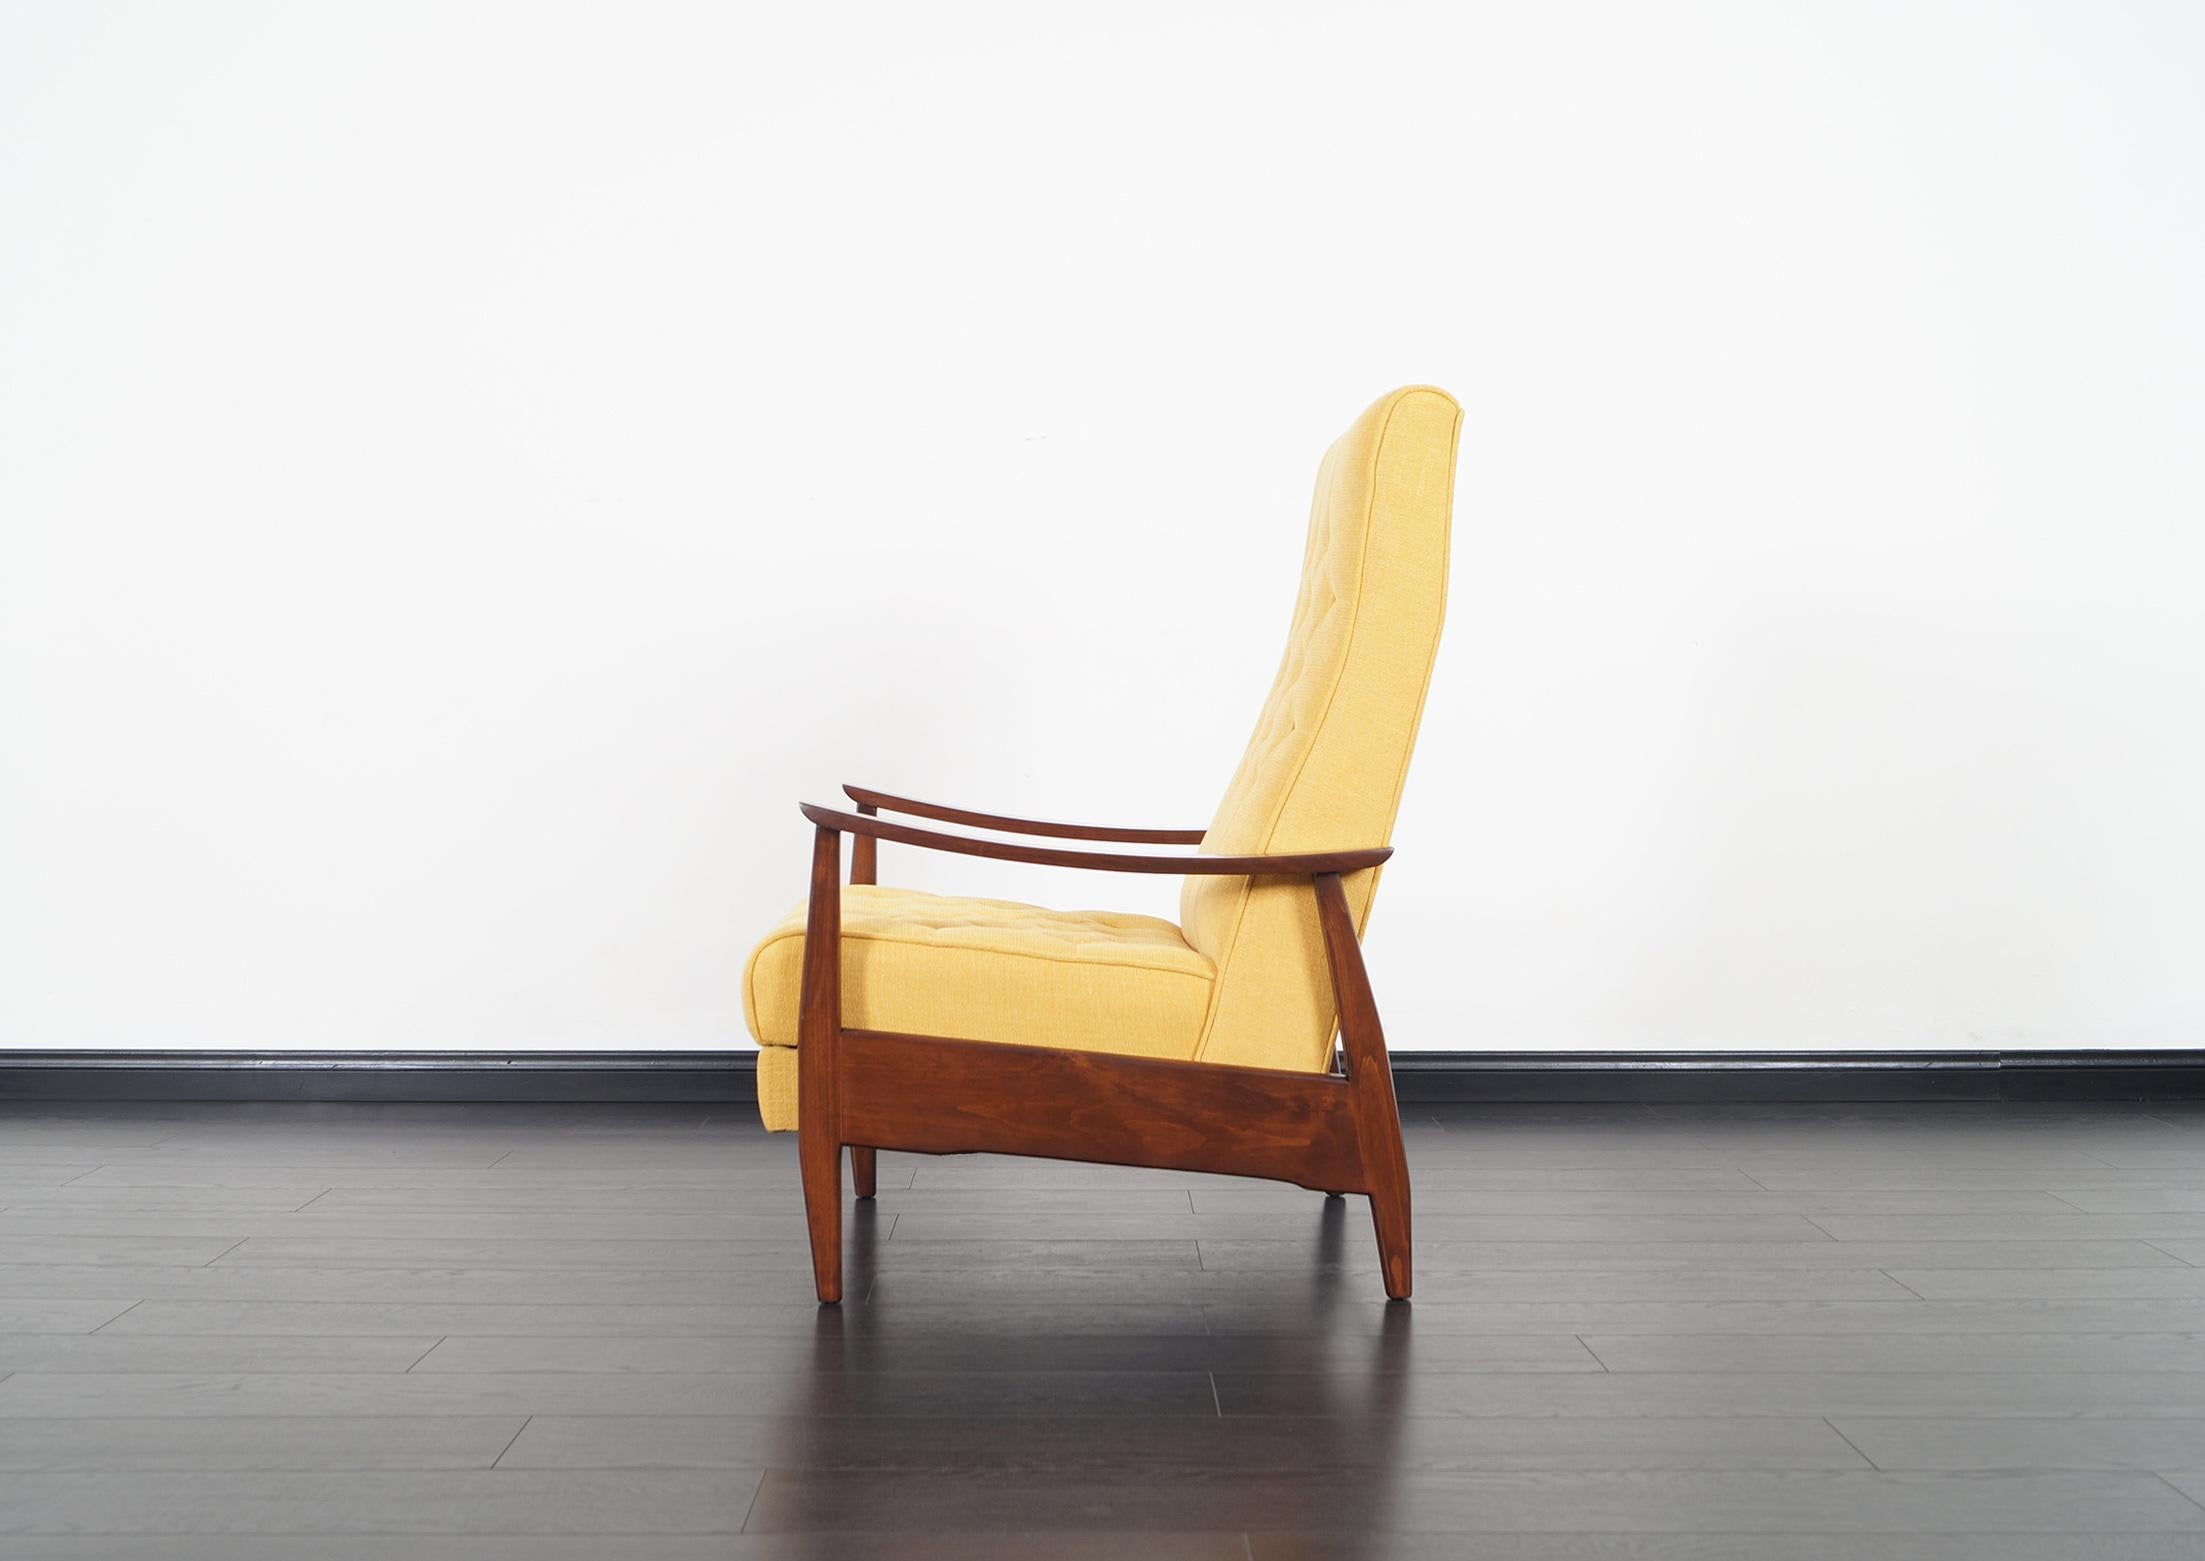 Früher Vintage-Liegestuhl:: entworfen von Milo Baughman und hergestellt von James Inc. Dieser bequeme Sessel verfügt über einen neu gepolsterten Sitz mit getuftetem Rautenmuster:: der von einem massiven Nussbaumrahmen getragen wird. Der Sessel